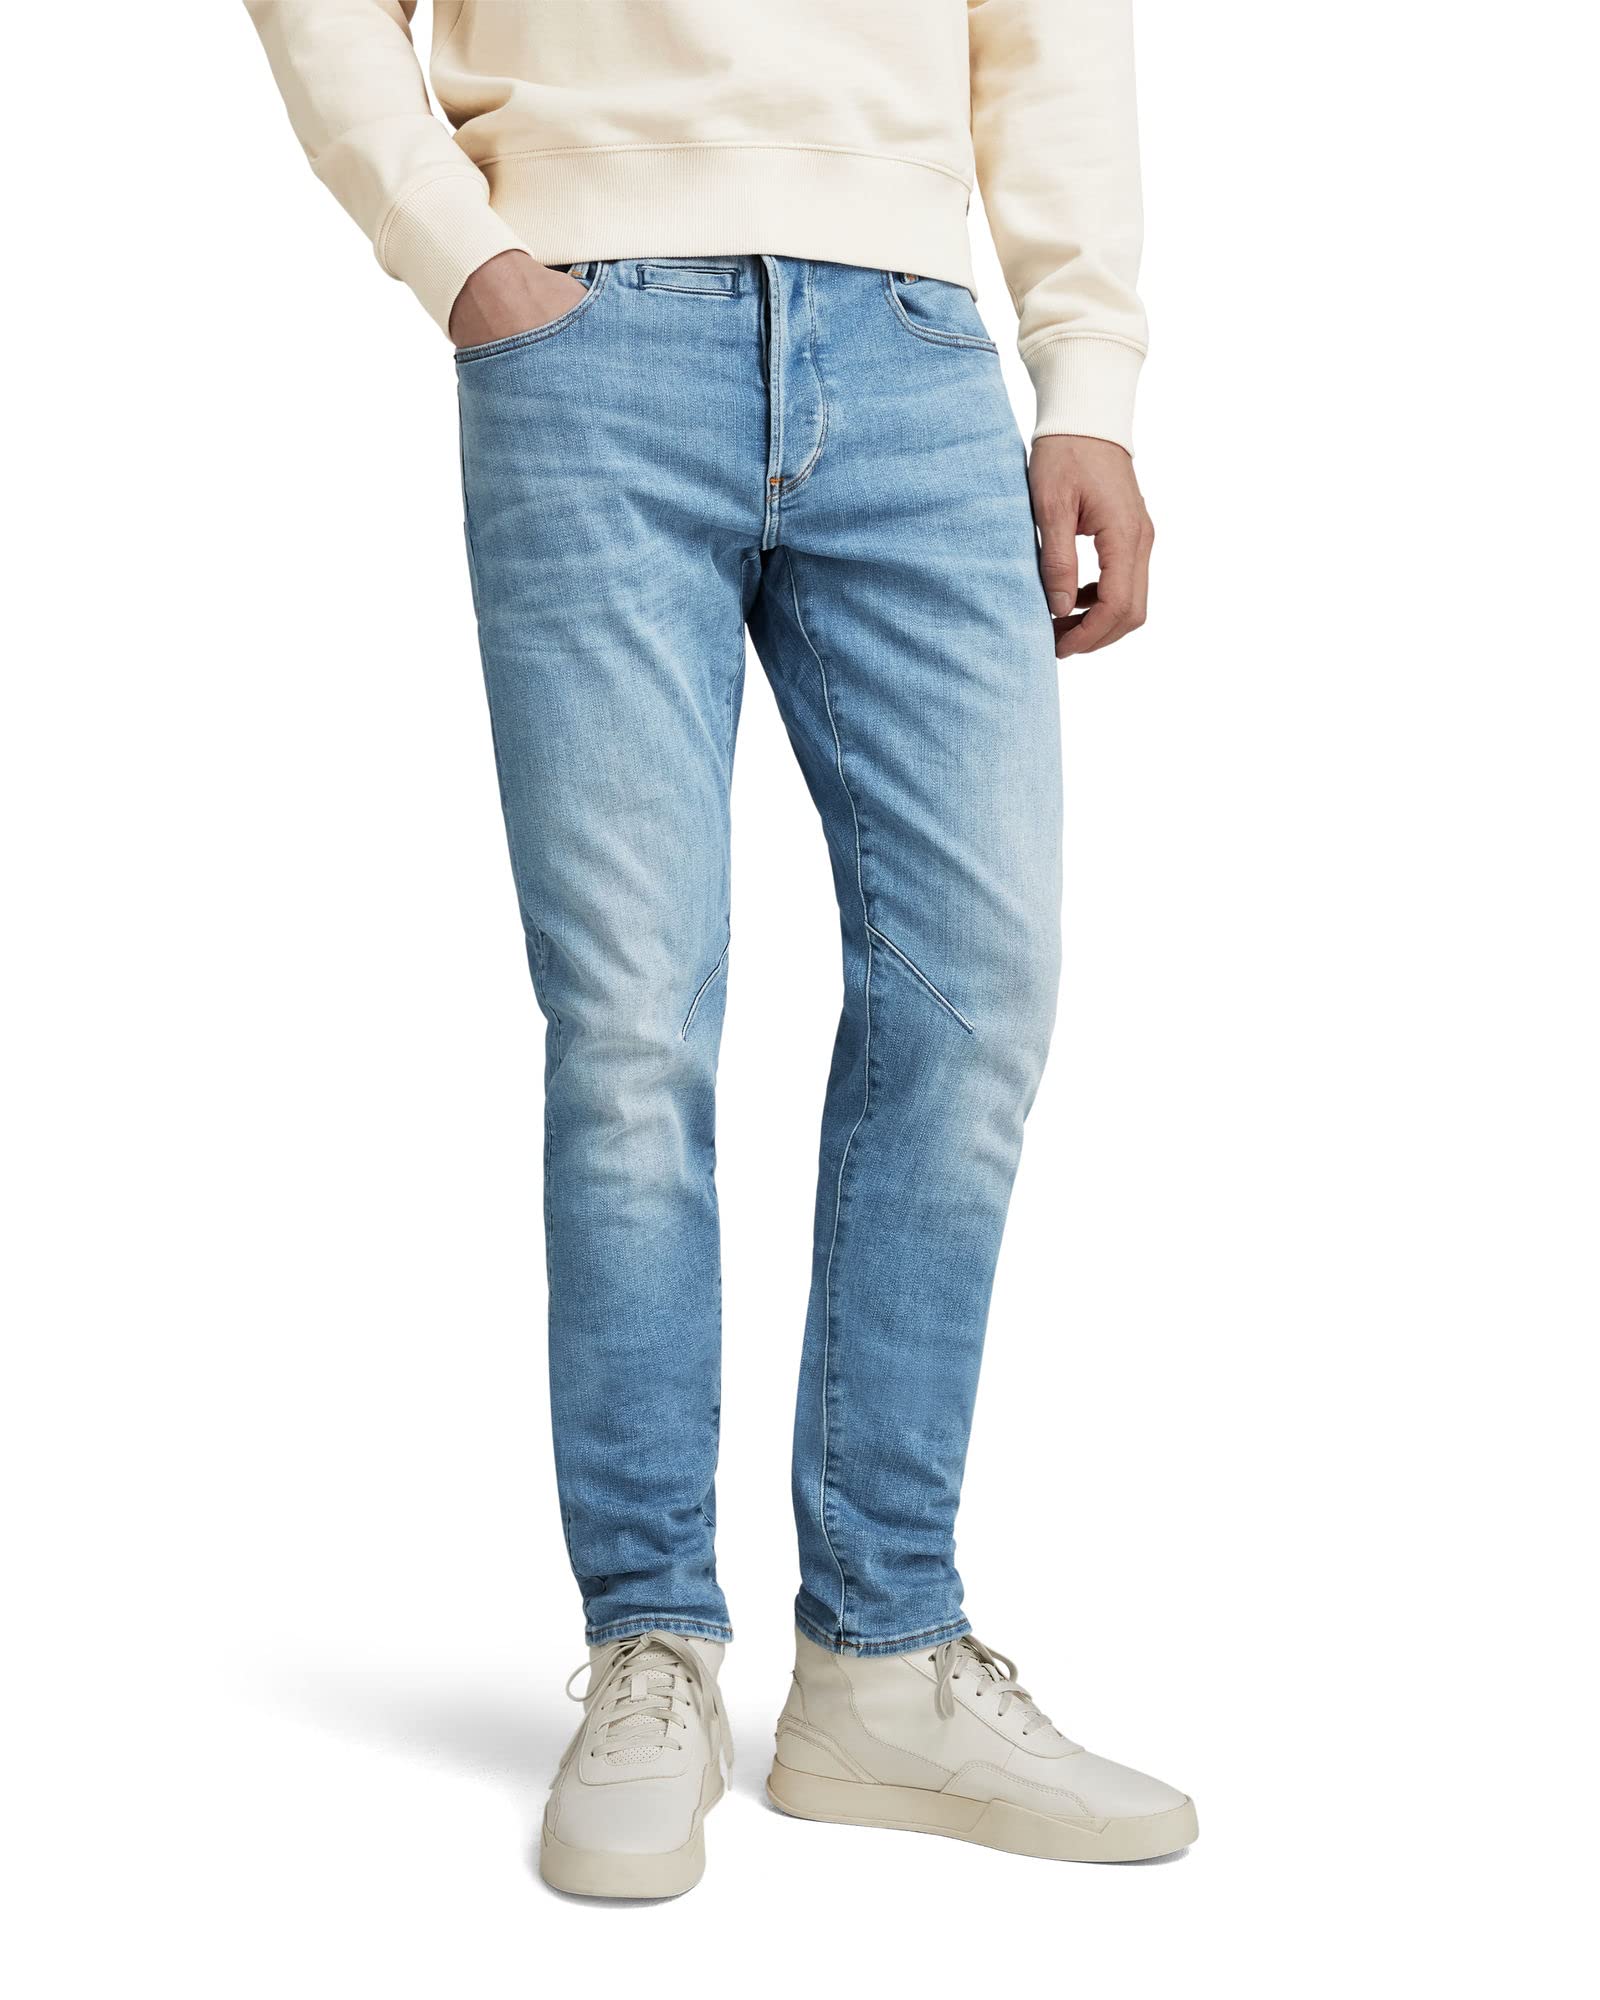 G-STAR RAW Herren D-Staq 5-Pocket Slim Jeans, Blau (lt indigo aged D06761-8968-8436), 35W / 34L